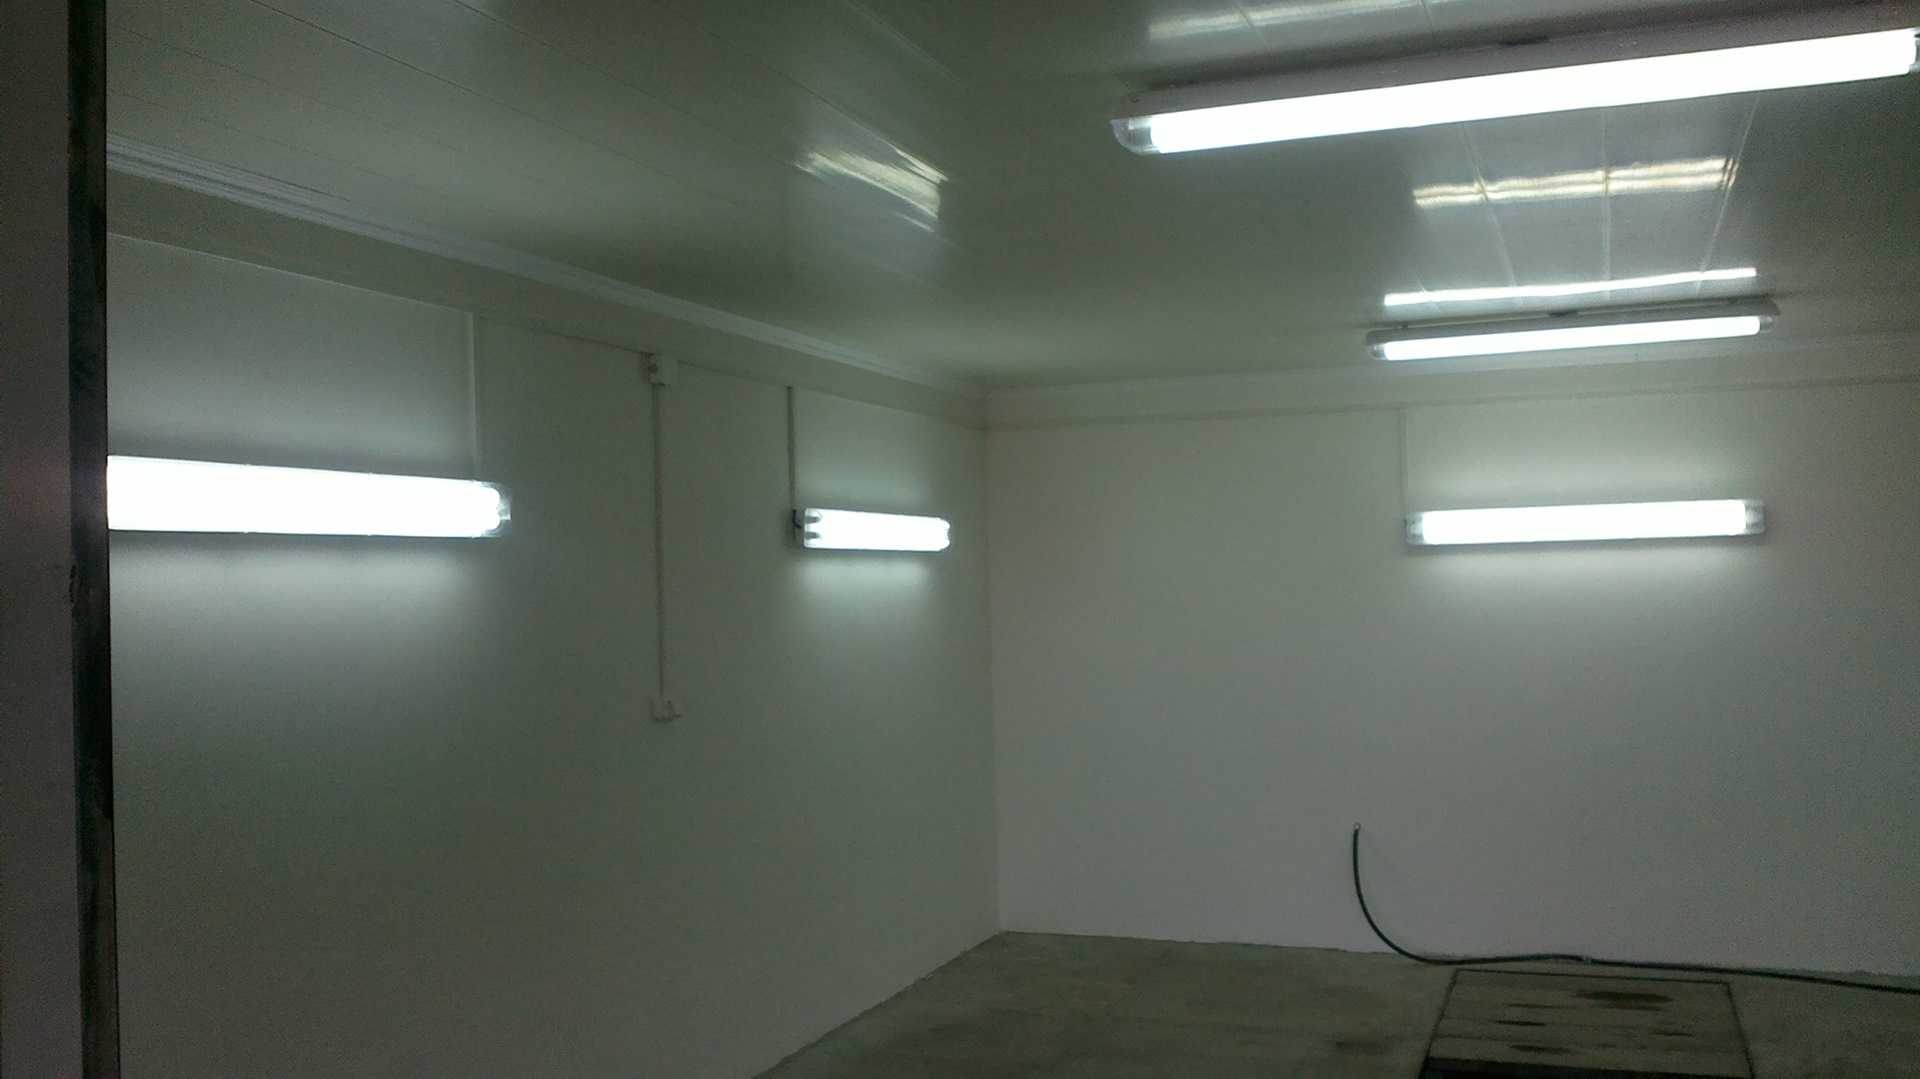 Делаем освещение в гараже - 125 фото и видео как сделать правильно хорошее освещение в гараже